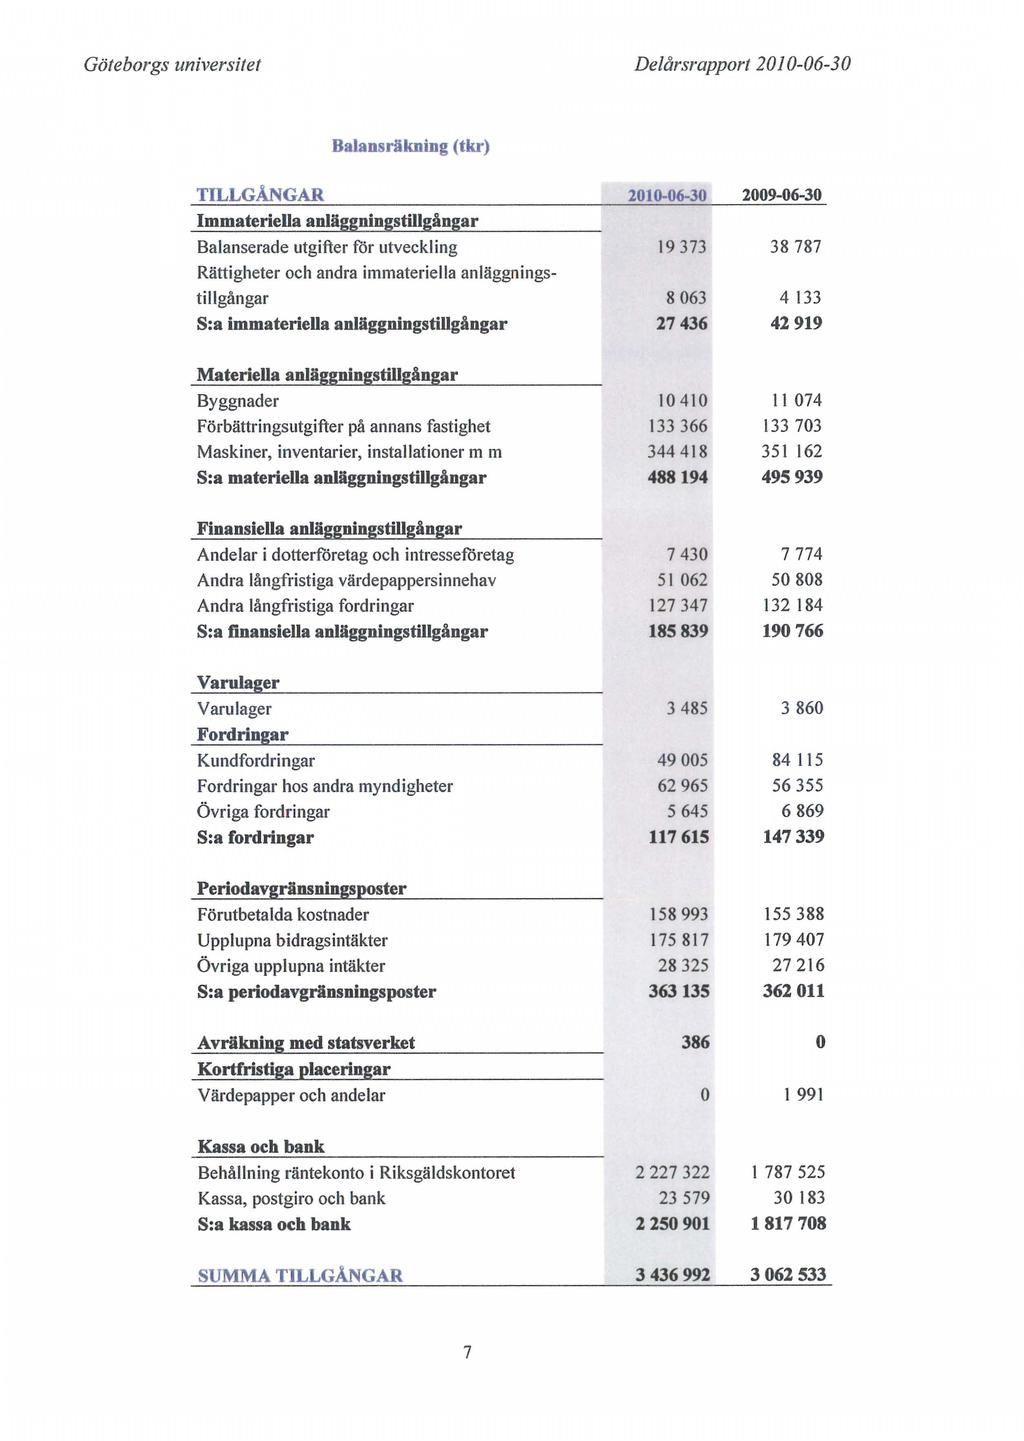 Göteborgs universitet Delårsrapport 20 J 0-06-3 O Balansräkning (tkr) TILLGÅNGAR 2010-06-30 2009-06-30 Immateriella anläggningstillgångar Balanserade utgifter för utveckling 19373 38787 Rättigheter